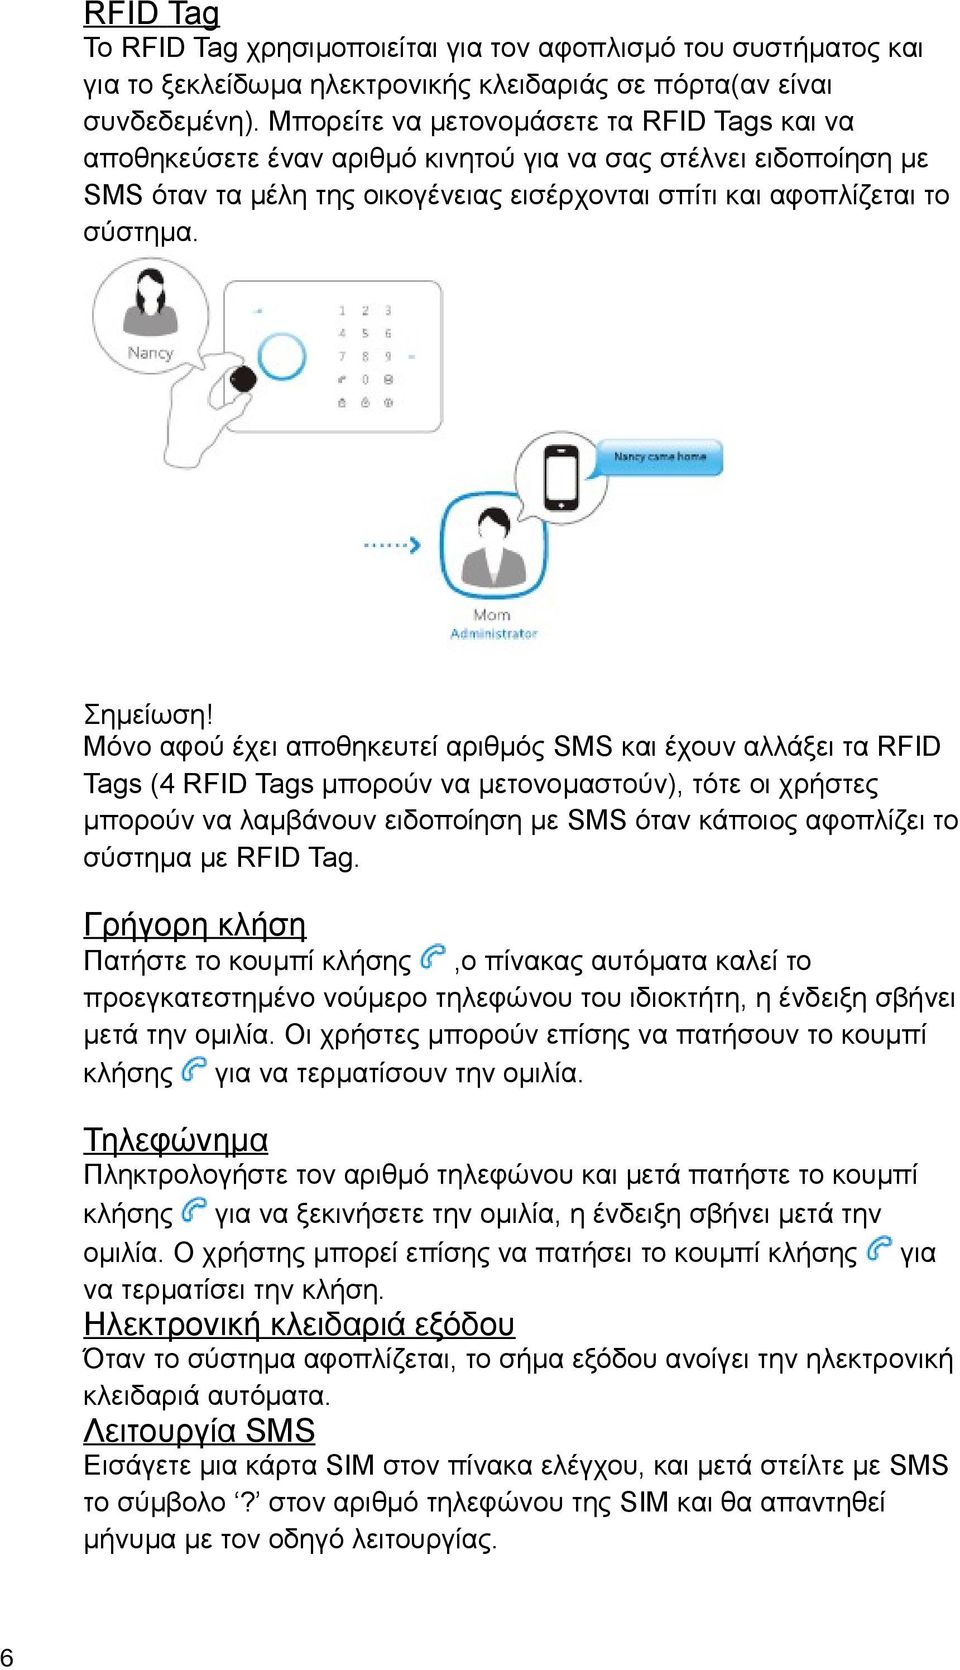 Μόνο αφού έχει αποθηκευτεί αριθμός SMS και έχουν αλλάξει τα RFID Tags (4 RFID Tags μπορούν να μετονομαστούν), τότε οι χρήστες μπορούν να λαμβάνουν ειδοποίηση με SMS όταν κάποιος αφοπλίζει το σύστημα